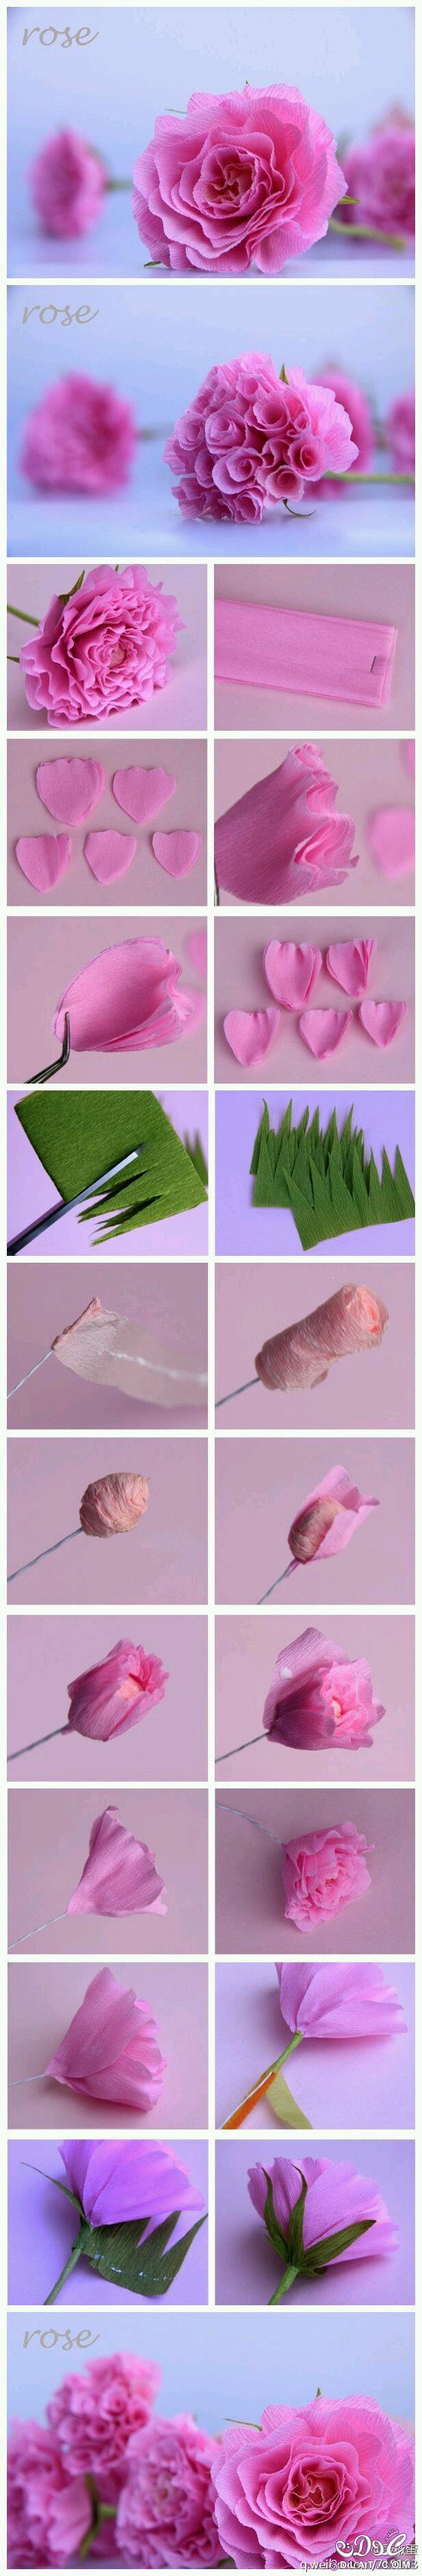 طريقة صنع وردات من الورق بطريقة سهلة